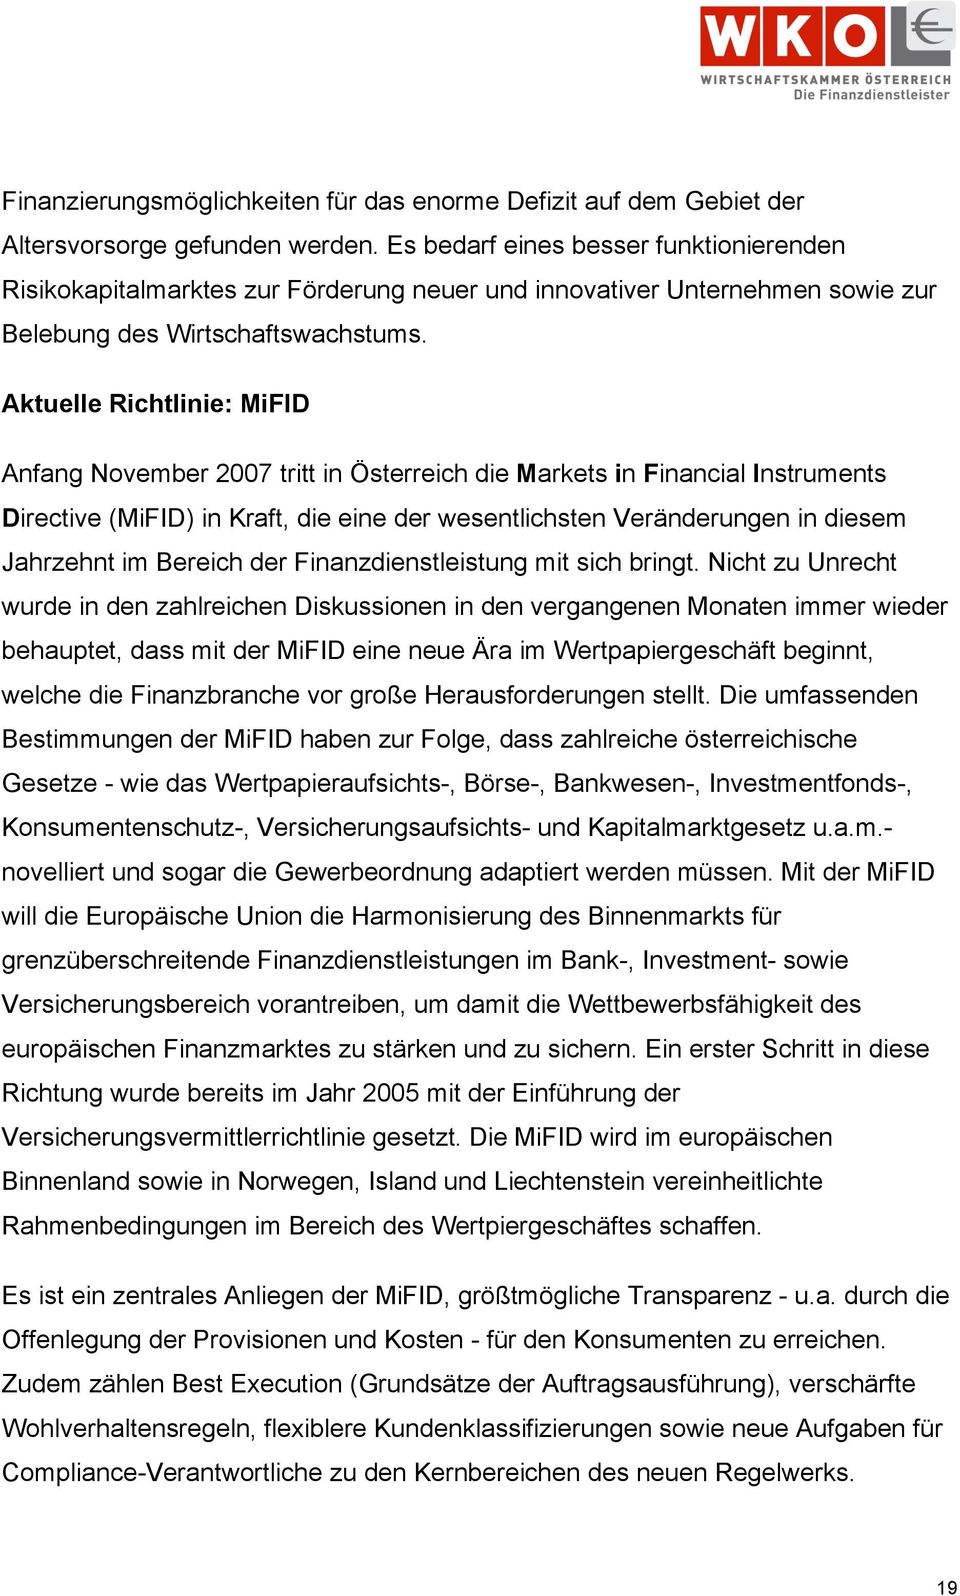 Aktuelle Richtlinie: MiFID Anfang November 00 tritt in Österreich die Markets in Financial Instruments Directive (MiFID) in Kraft, die eine der wesentlichsten Veränderungen in diesem Jahrzehnt im